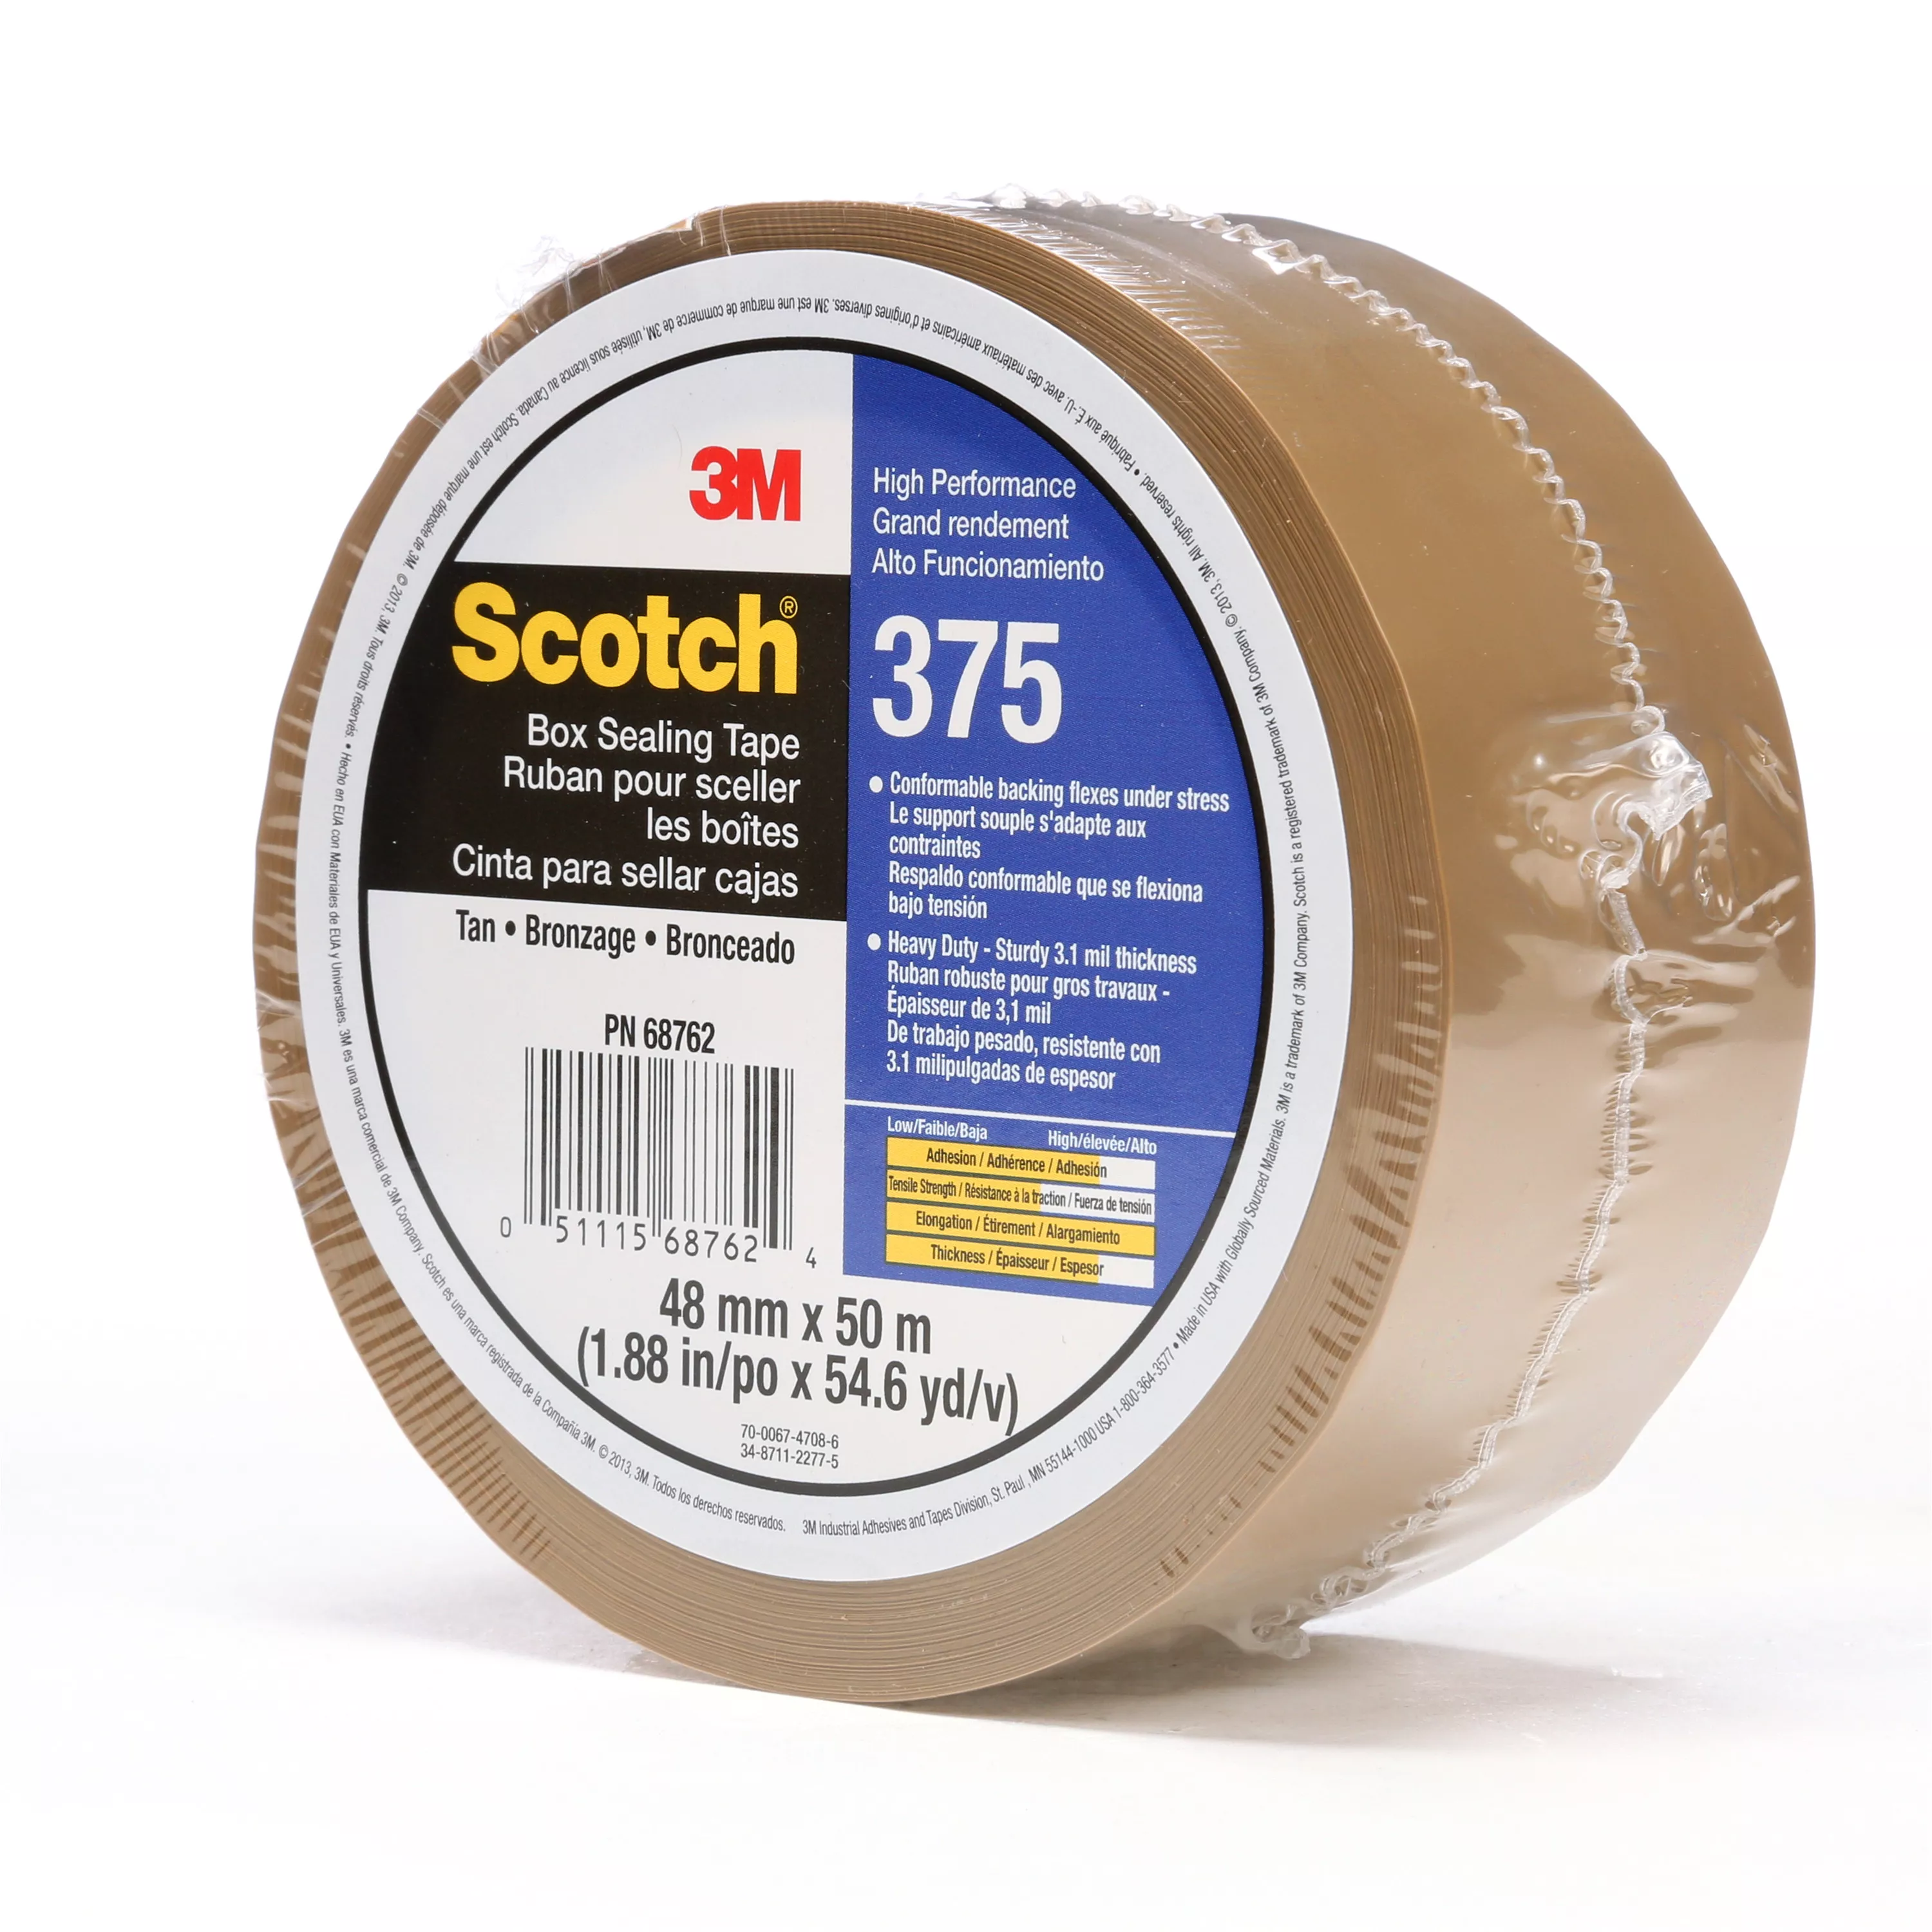 UPC 00051115687624 | Scotch® Box Sealing Tape 375